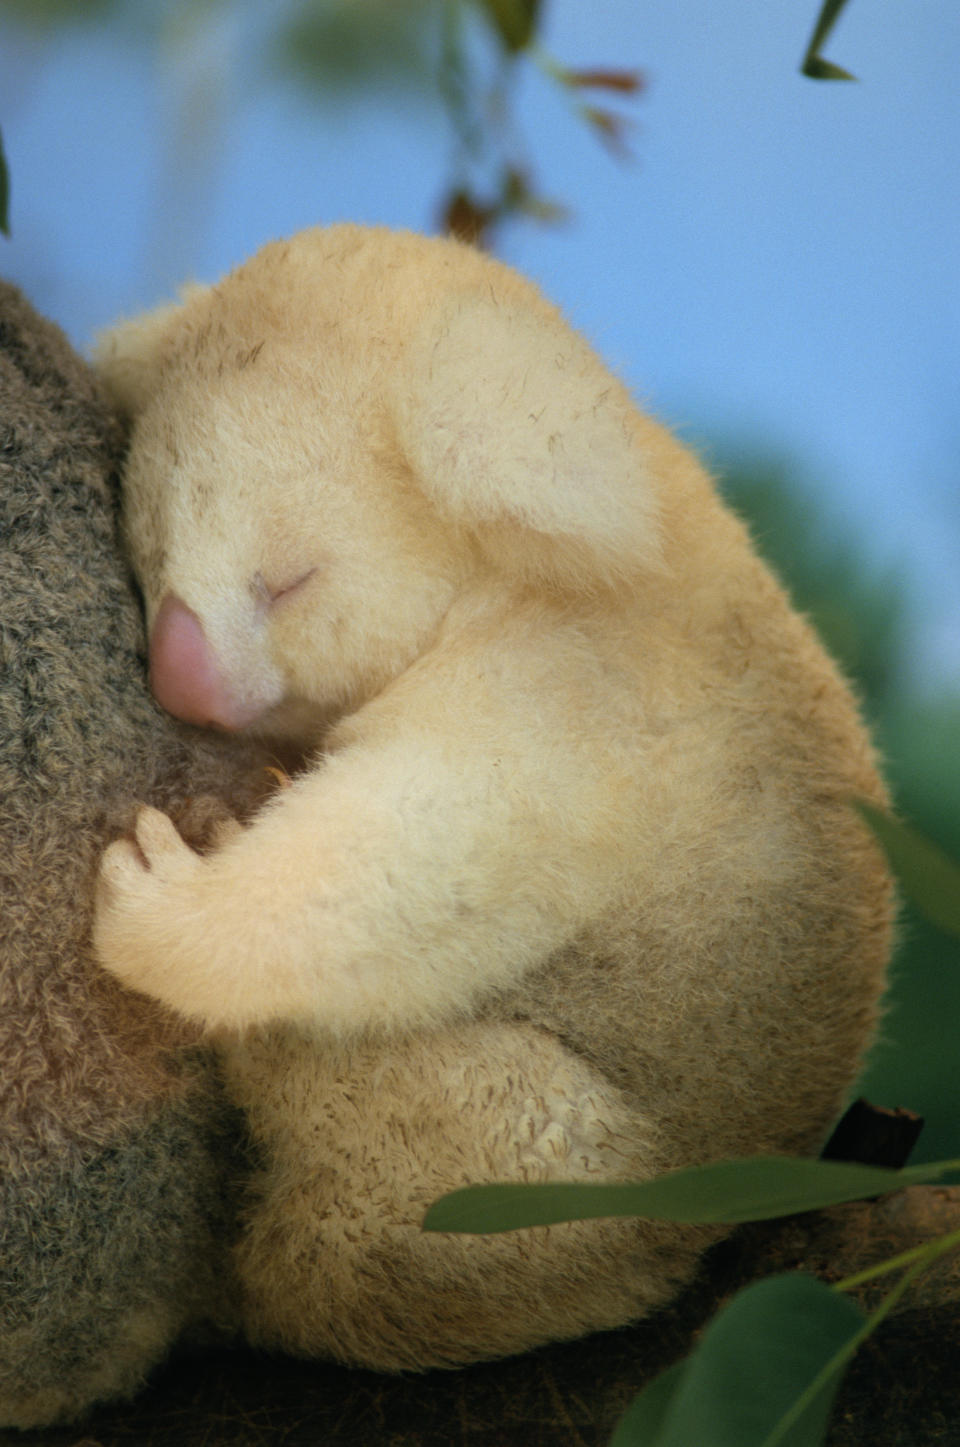 Tiny koala